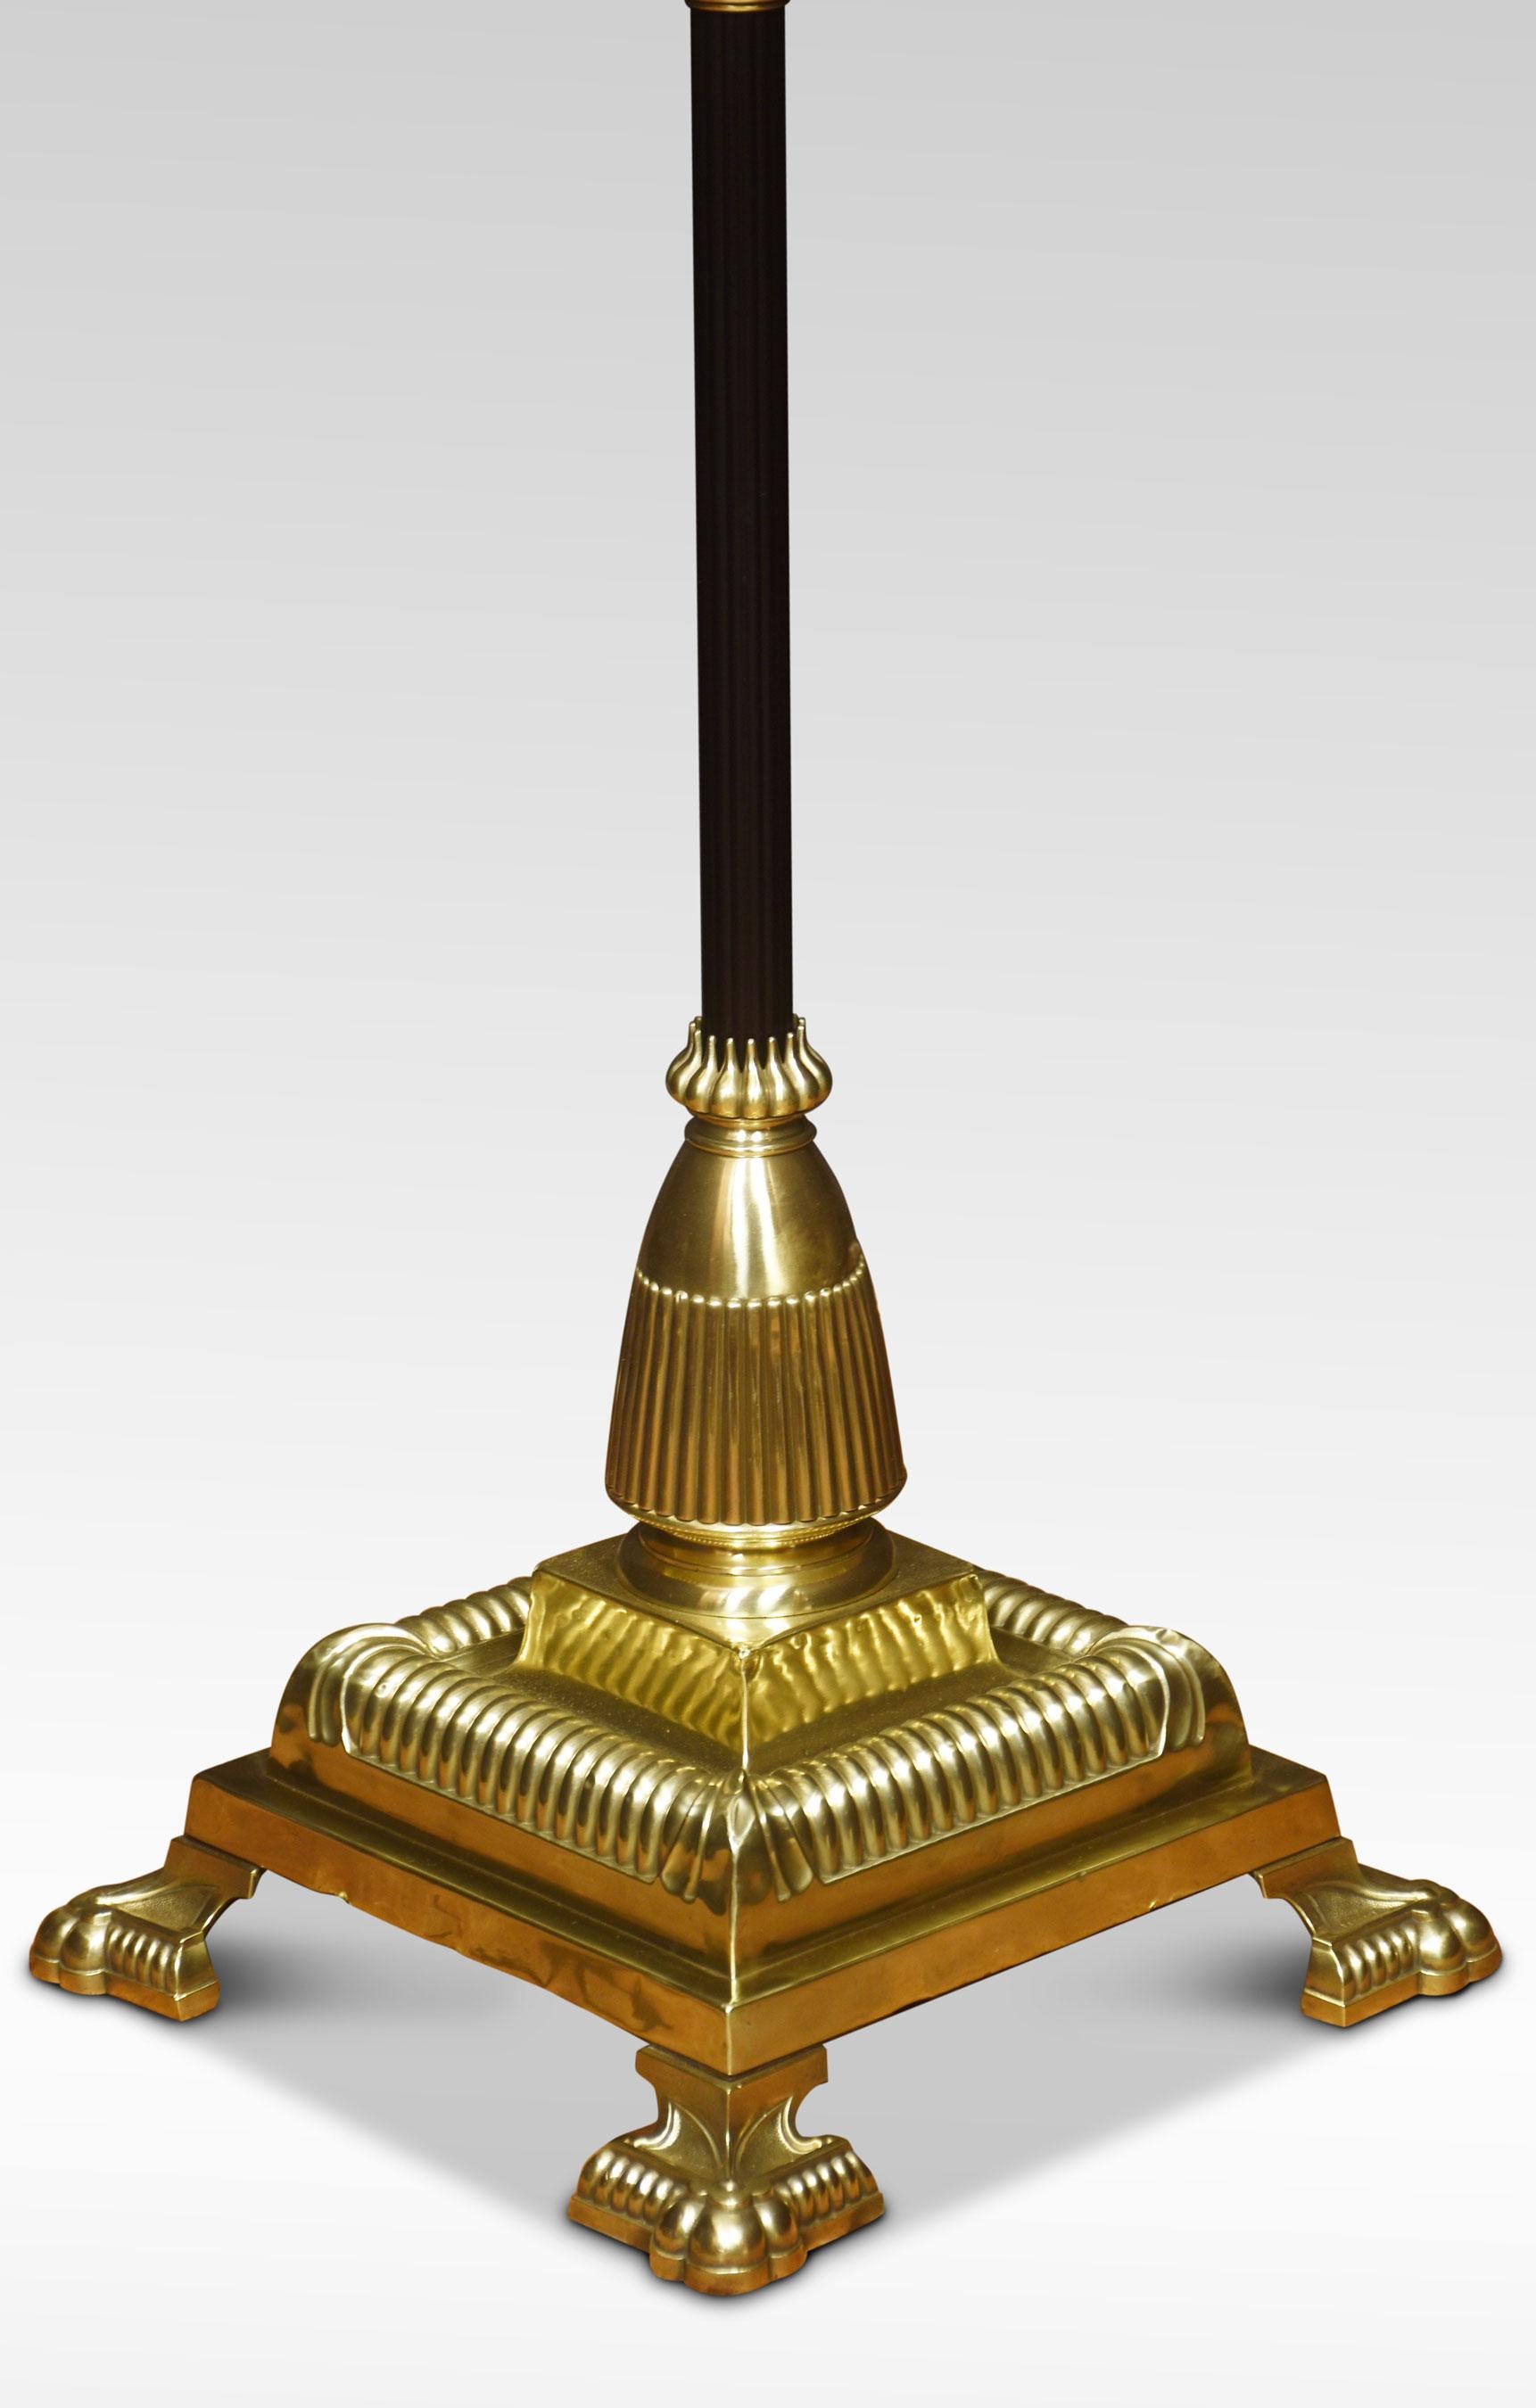 Lampe standard en laiton du 19e siècle. Réservoir d'huile décoré au-dessus de la colonne corinthienne ébonisée et de la tige réglable, sur une grande base carrée à gradins avec des pieds en forme de pattes. La lampe a été recâblée. Transformé pour